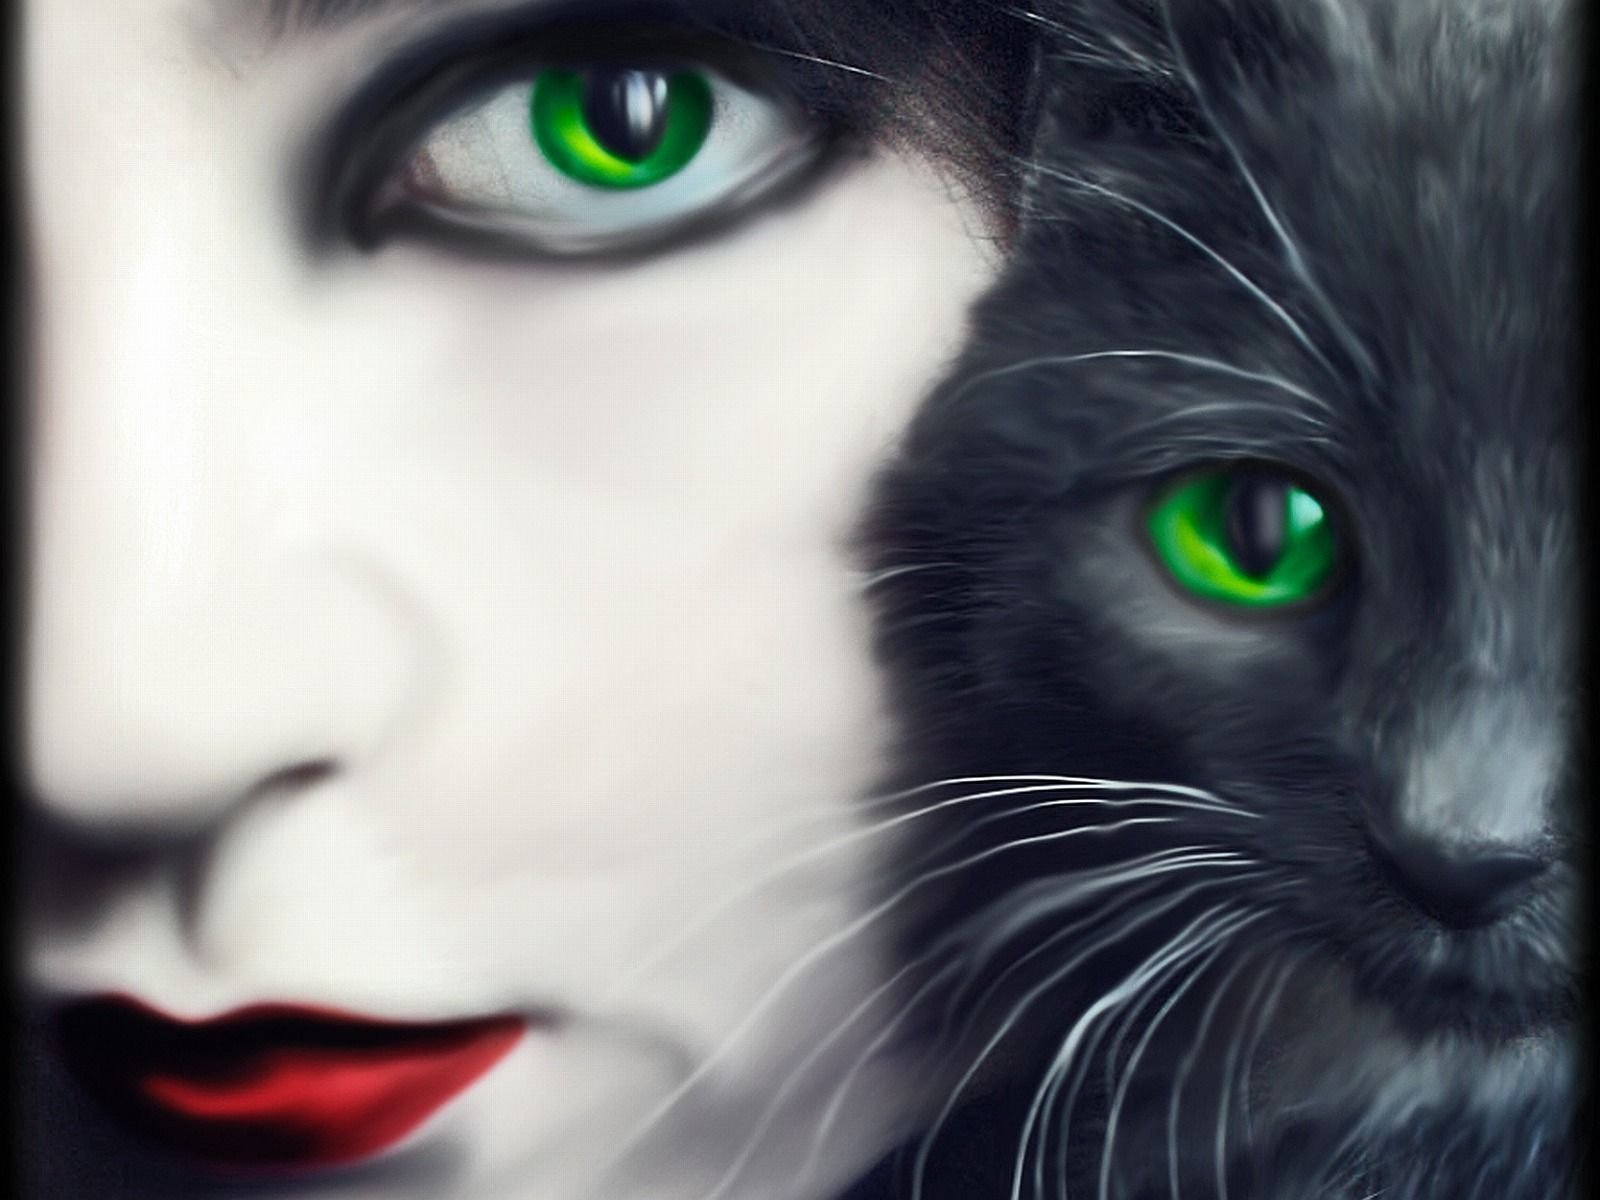 Картинка девушка с кошкой. Кошка с зелеными глазами. Черная кошка с зелеными глазами. Девушка с кошачьими глазами. Девушка с черной кошкой.